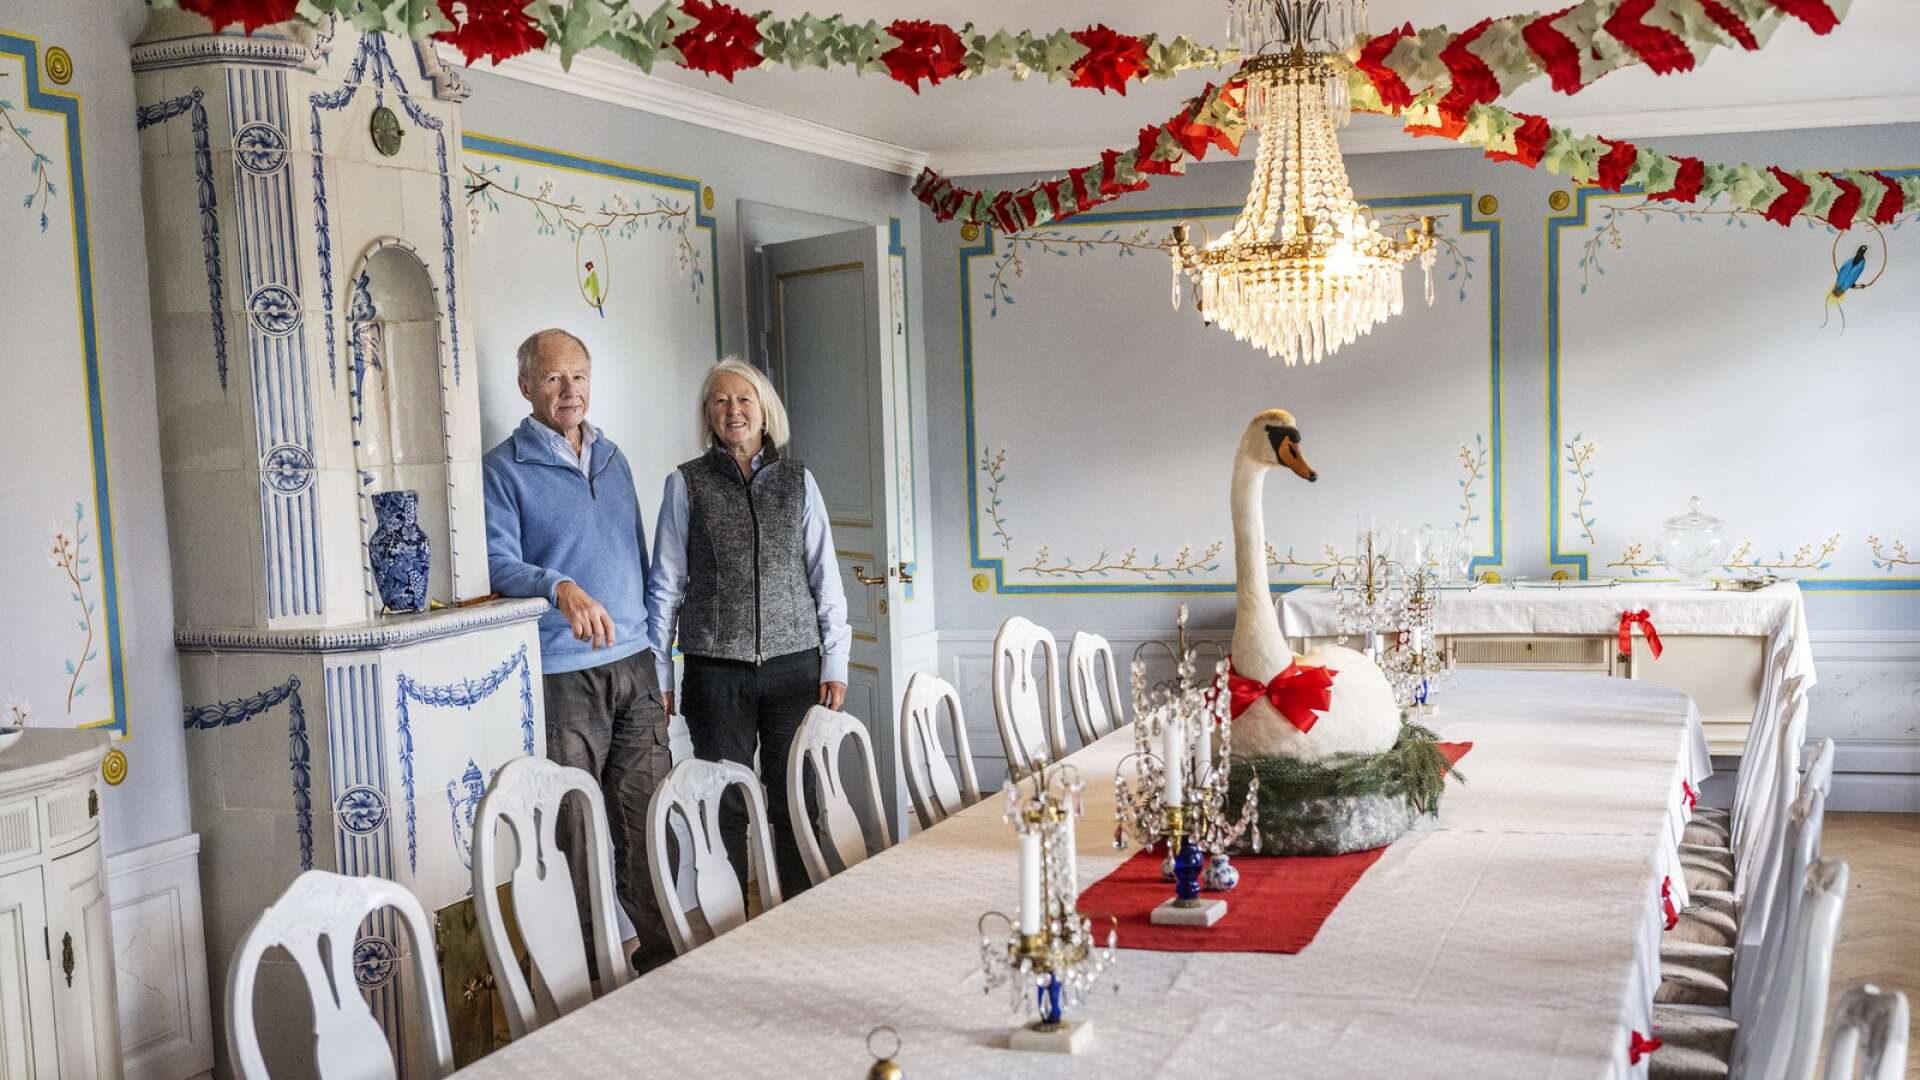 Matsalen hos Öjvins och Kerstin Tunsbrunn andas nyklassicism. Både den blådekorerade kakelugnen och väggmålningarna med paradisfåglar är influerade av Ostindiska kompaniets resor. Svanen på bordet är också den tidstypsik för 1700-talet.